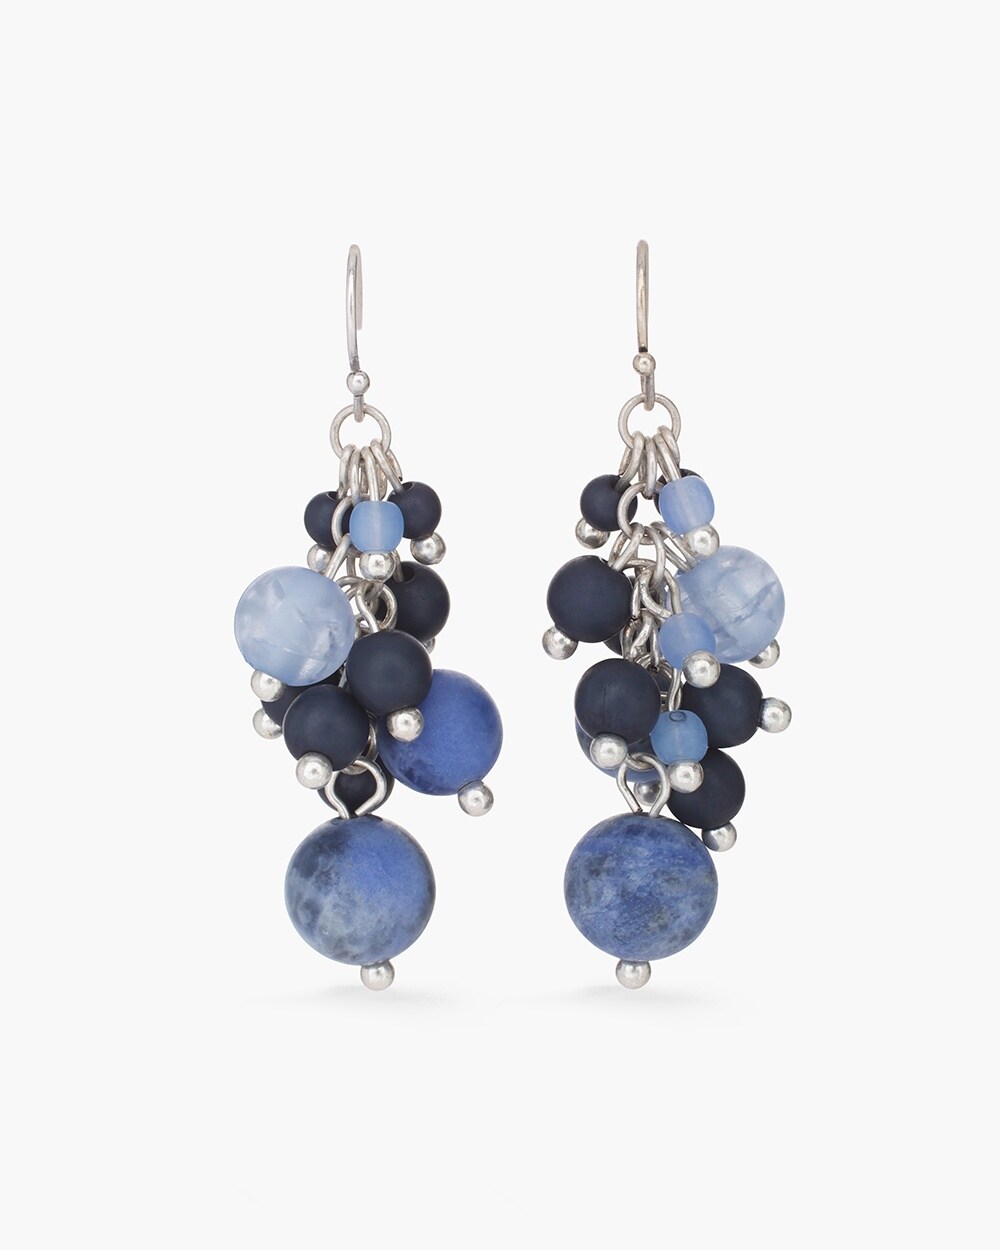 Blue Beaded Cluster Earrings